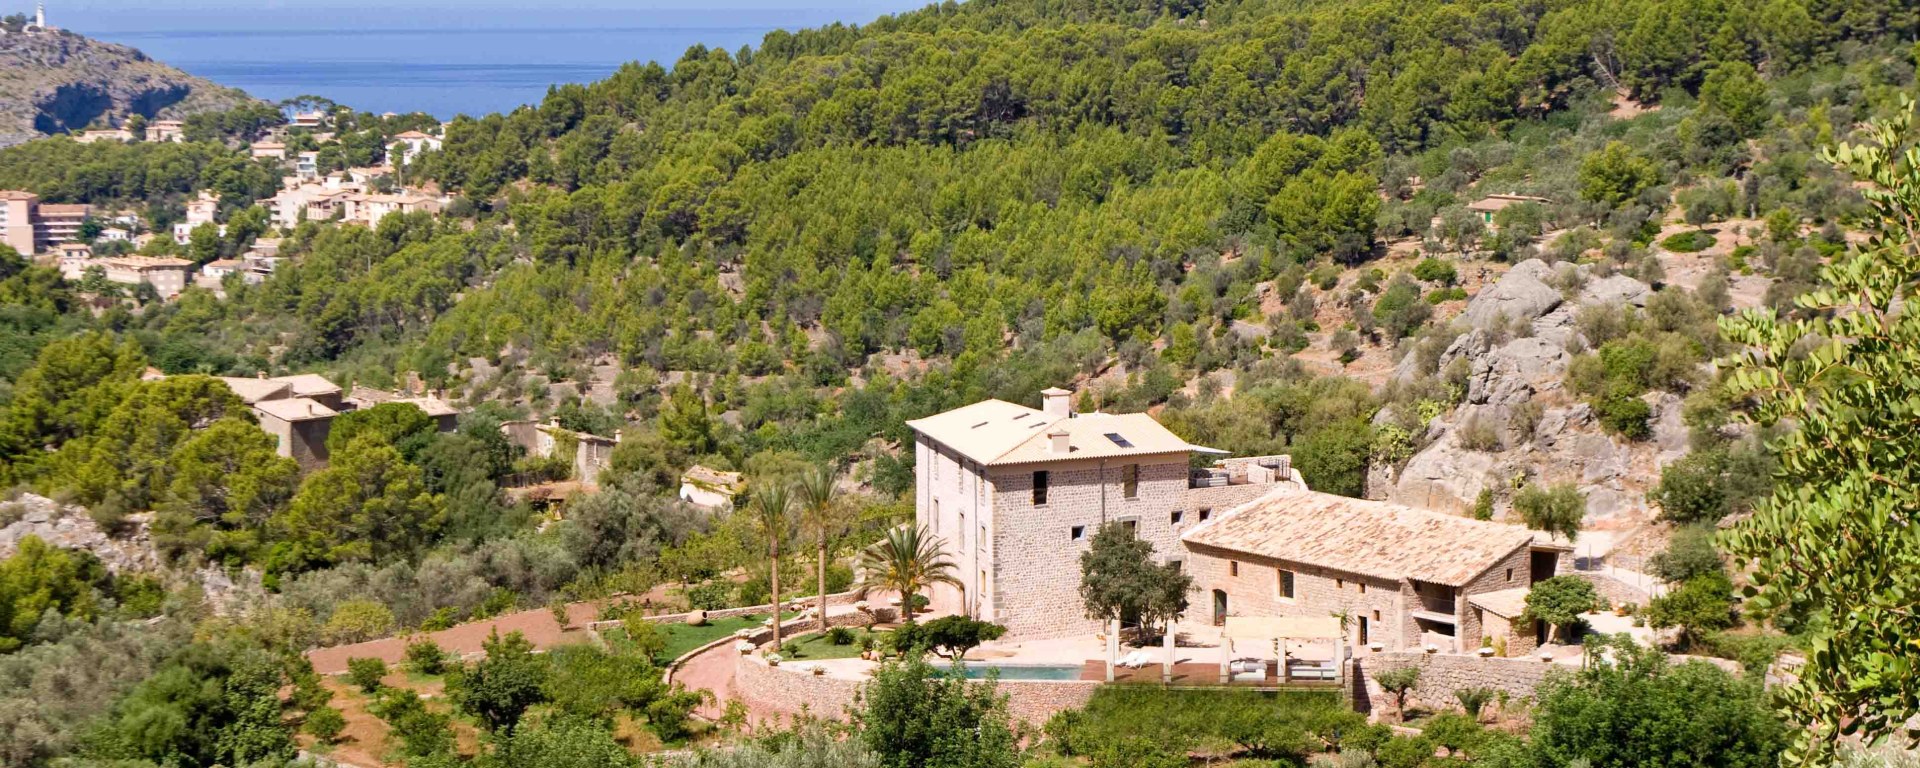 Ferienhaus Auf Mallorca Mieten 36